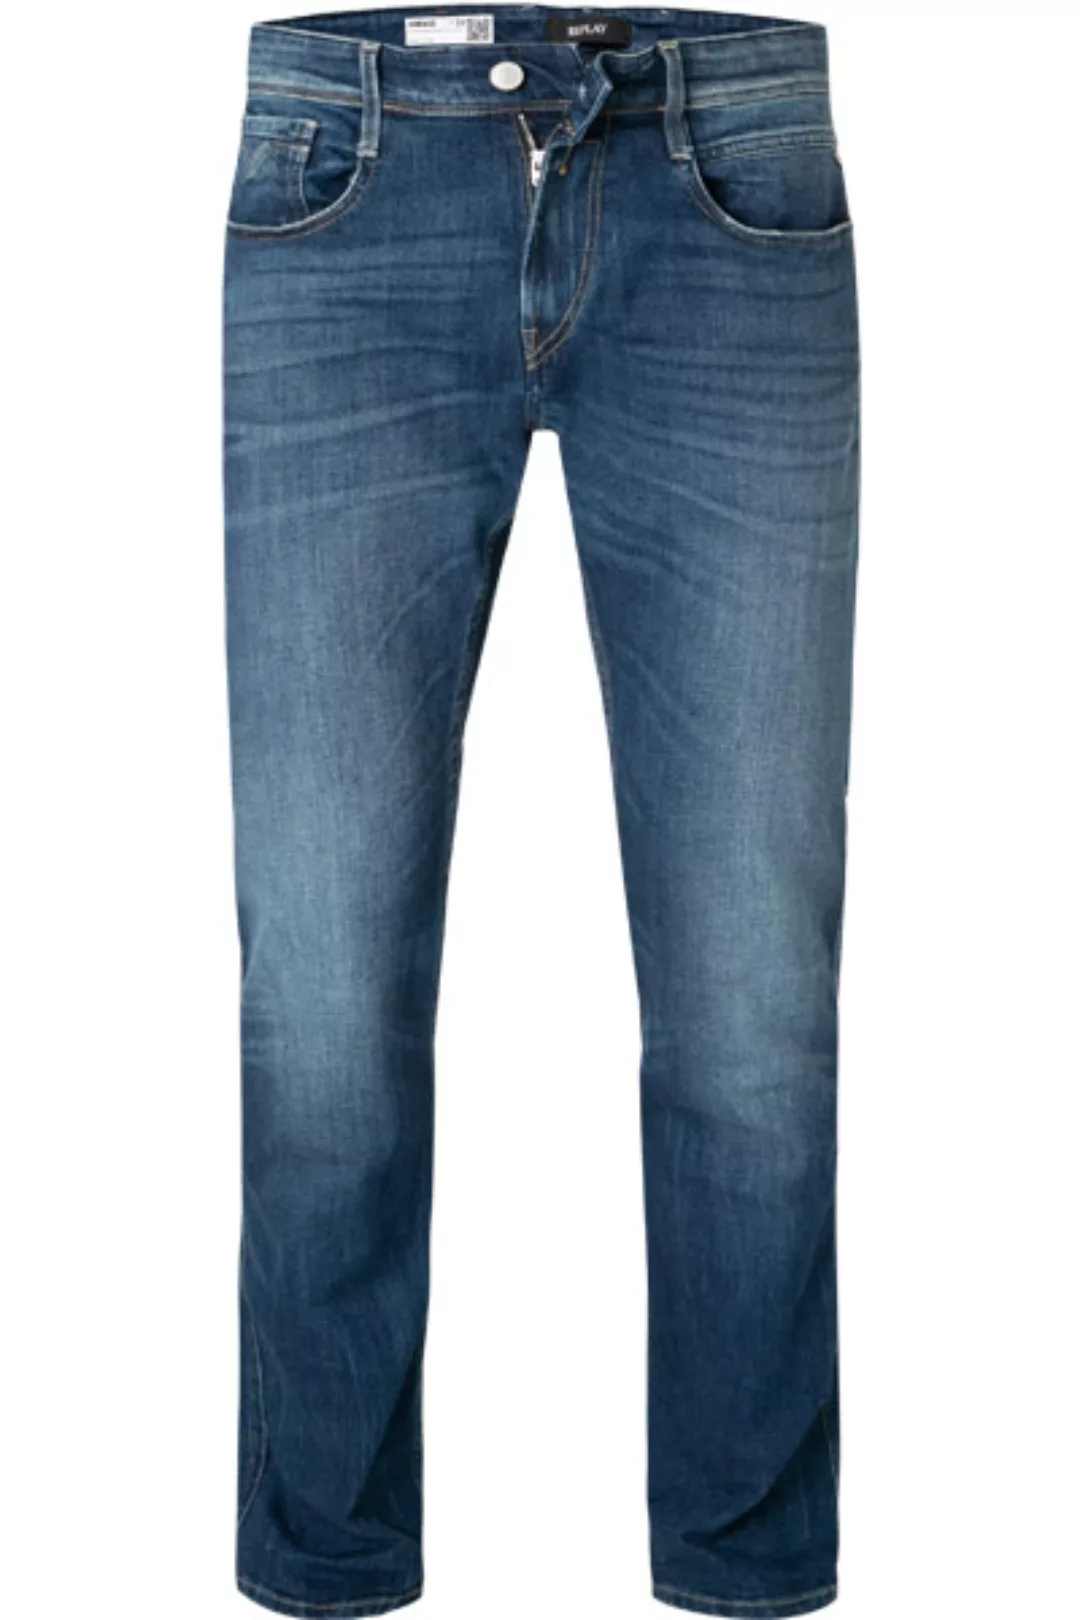 Replay Jeans Anbass M914Y.000.573 810/009 günstig online kaufen